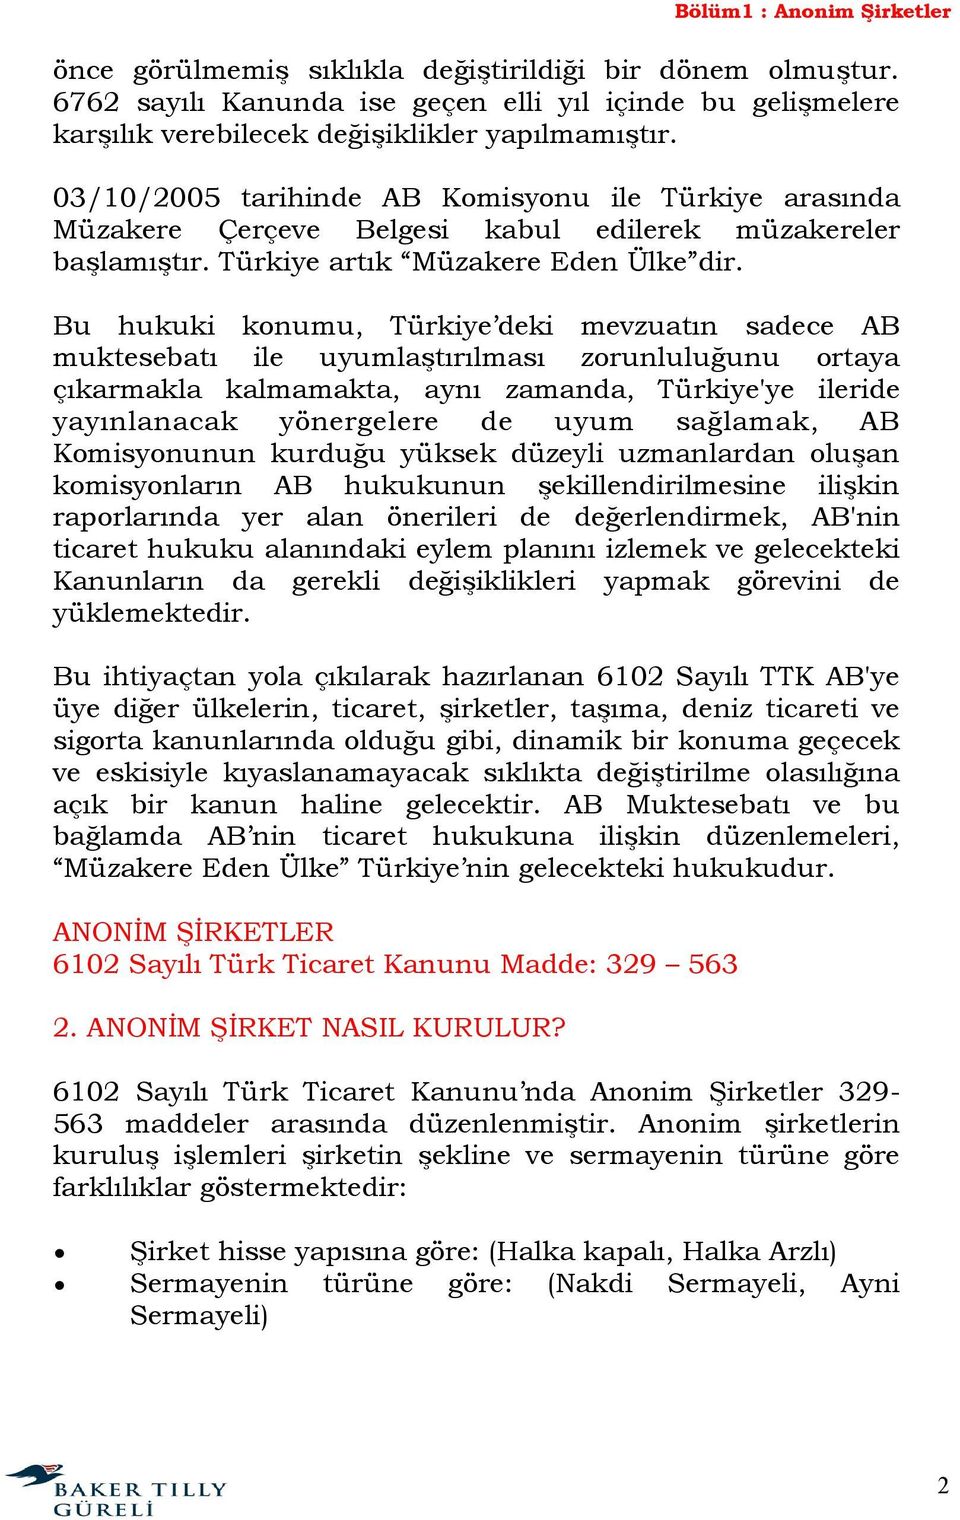 Bu hukuki konumu, Türkiye deki mevzuatın sadece AB muktesebatı ile uyumlaştırılması zorunluluğunu ortaya çıkarmakla kalmamakta, aynı zamanda, Türkiye'ye ileride yayınlanacak yönergelere de uyum